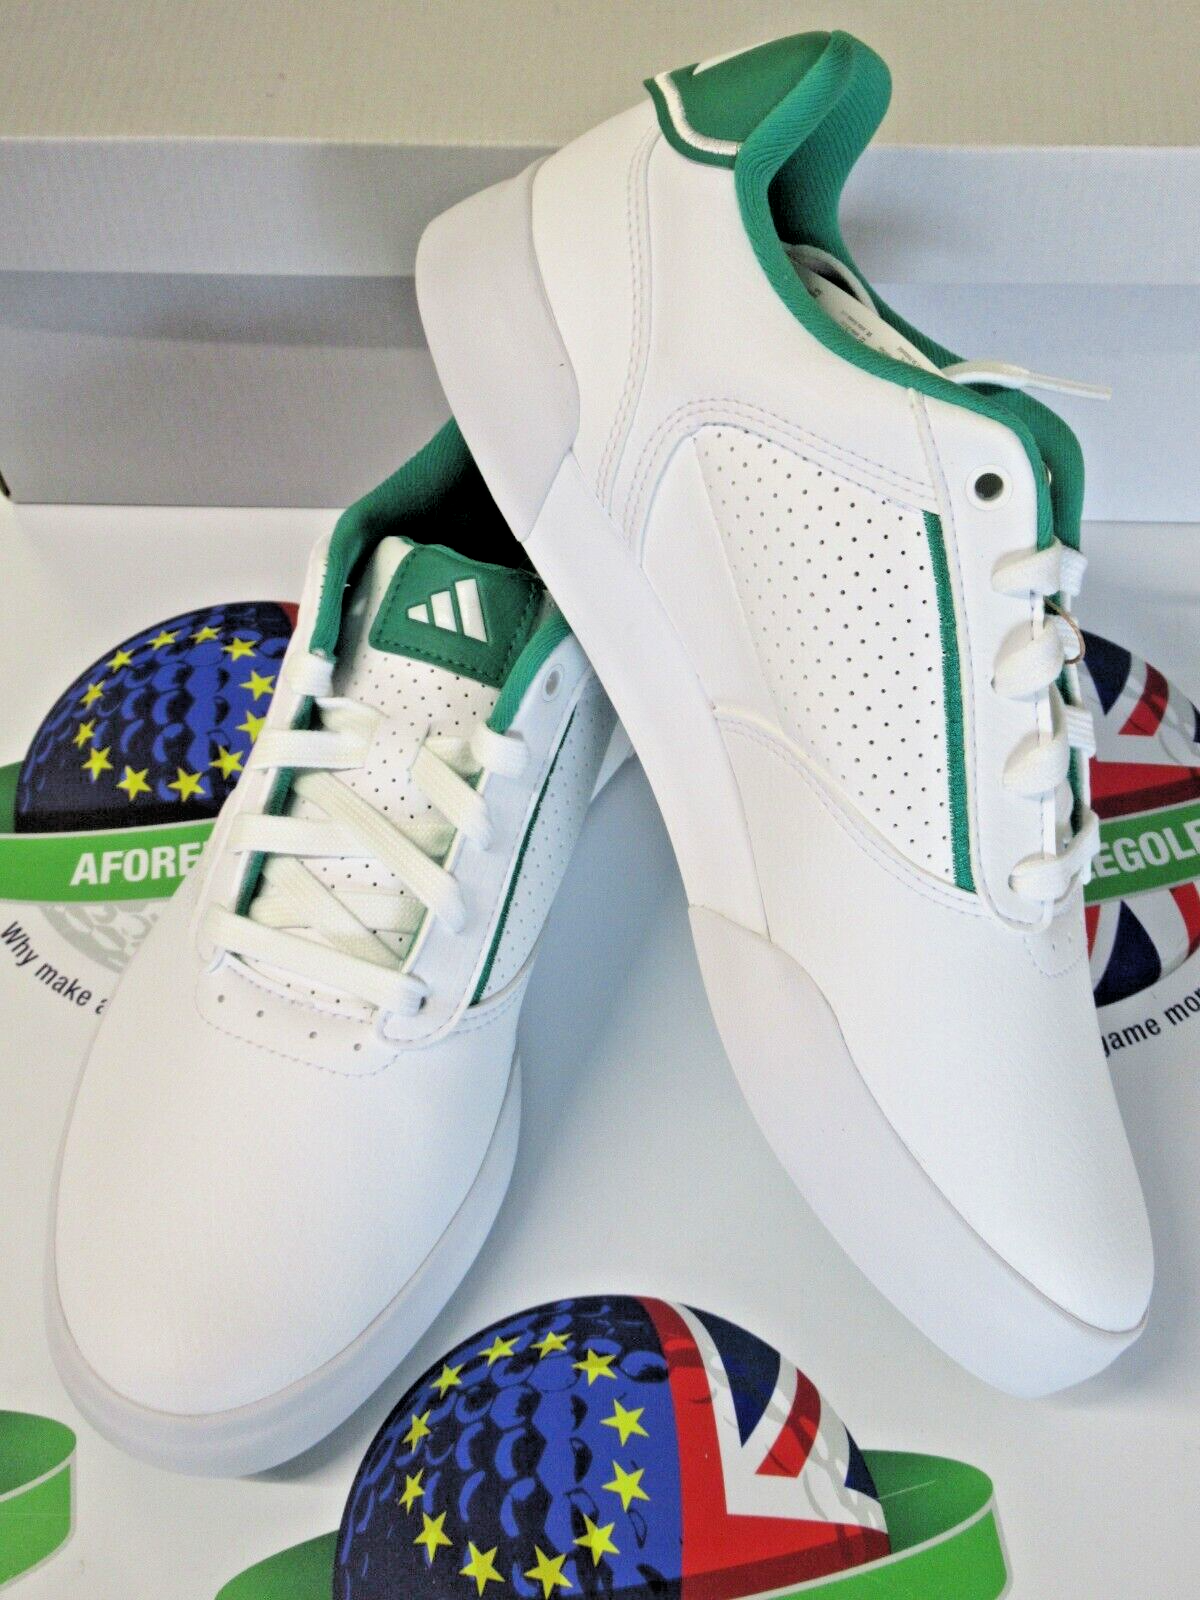 adidas retrocross white/green waterproof golf shoes uk size 12 wide